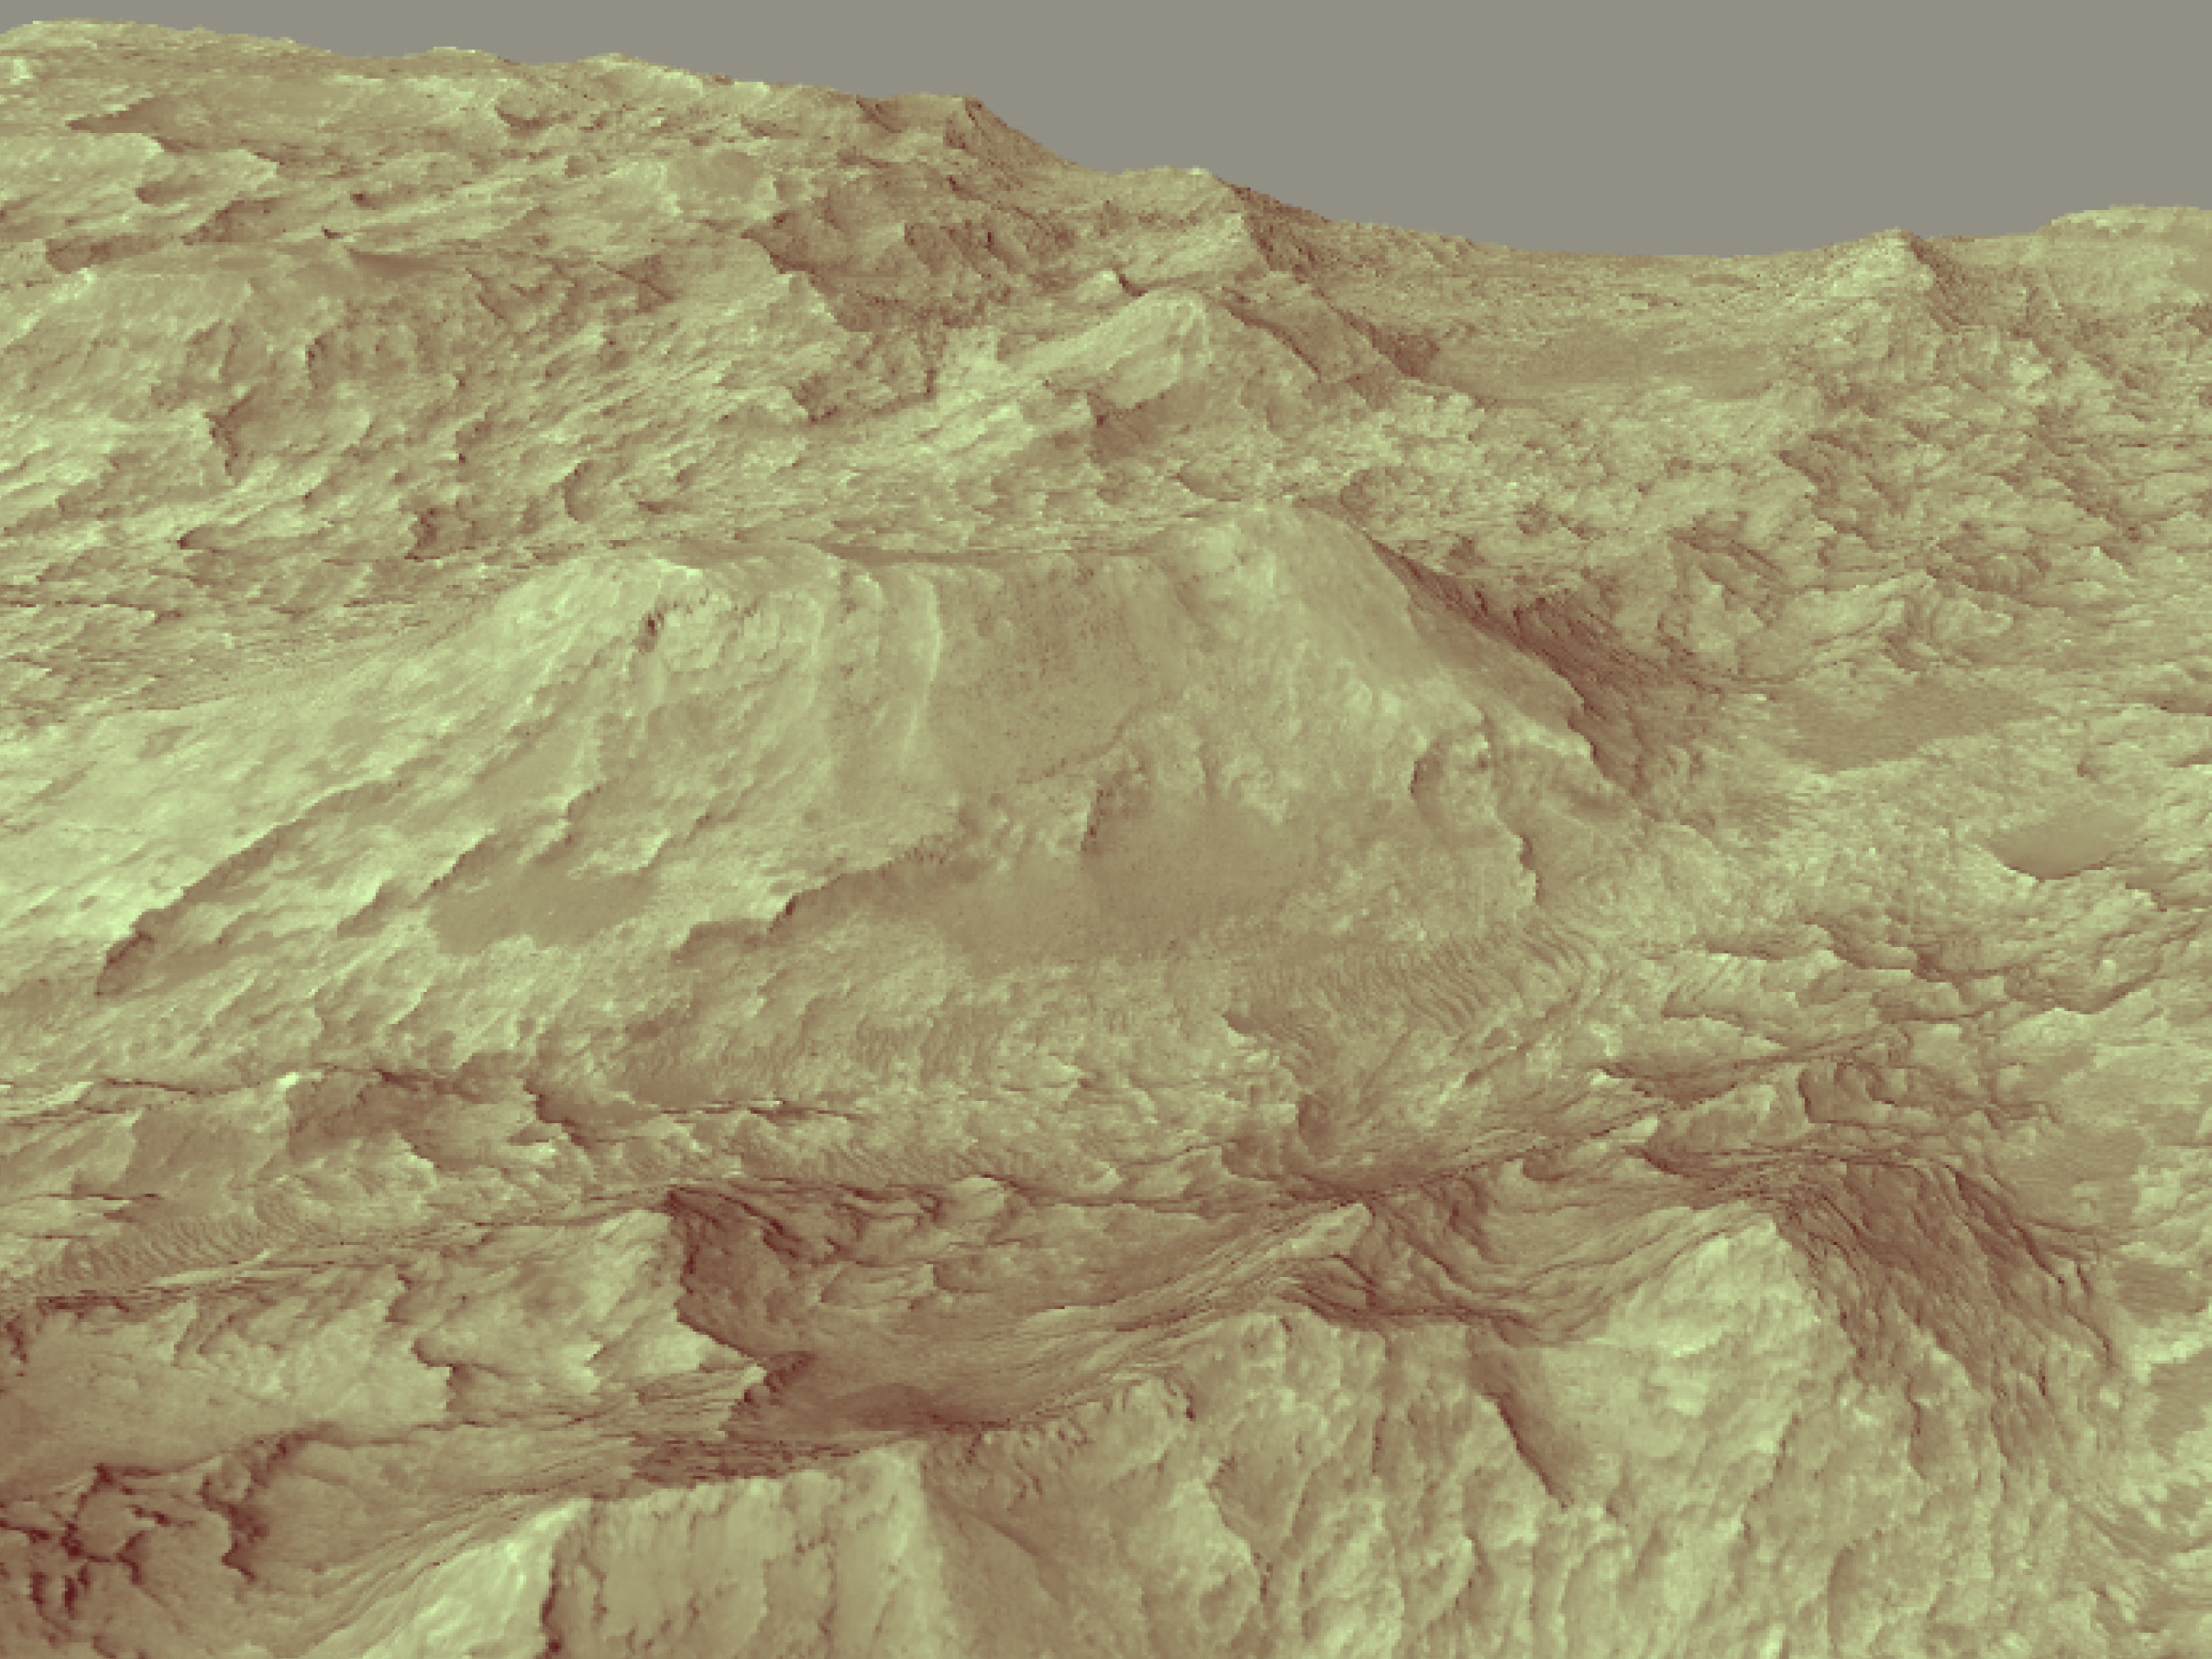 The Oldest Sedimentary Rocks on Mars